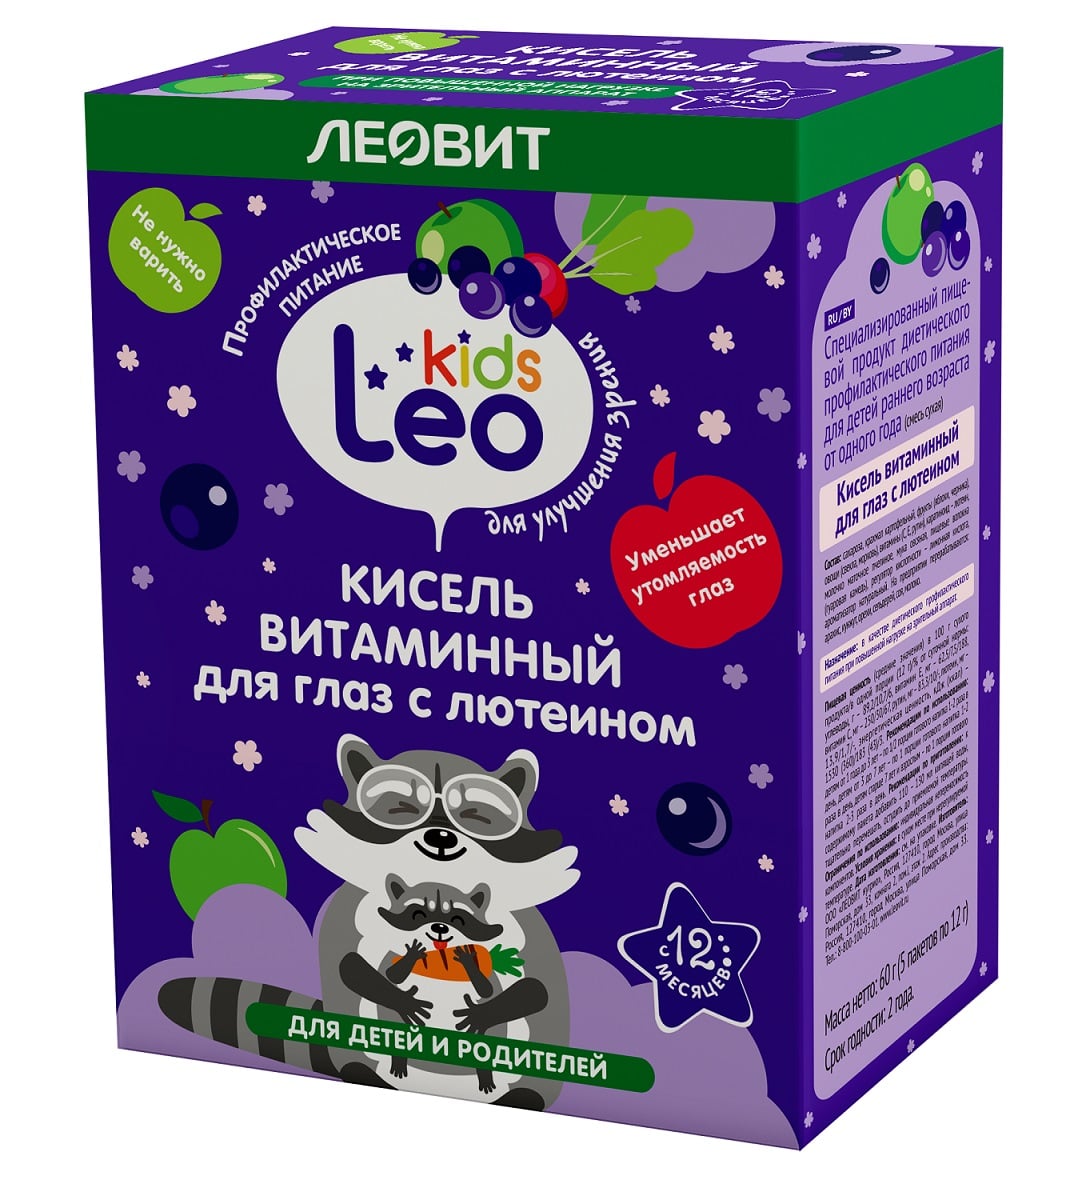 Купить Леовит Кисель витаминный для глаз с лютеином для детей, 5 пакетов х 12 г (Леовит, Leo Kids), Россия